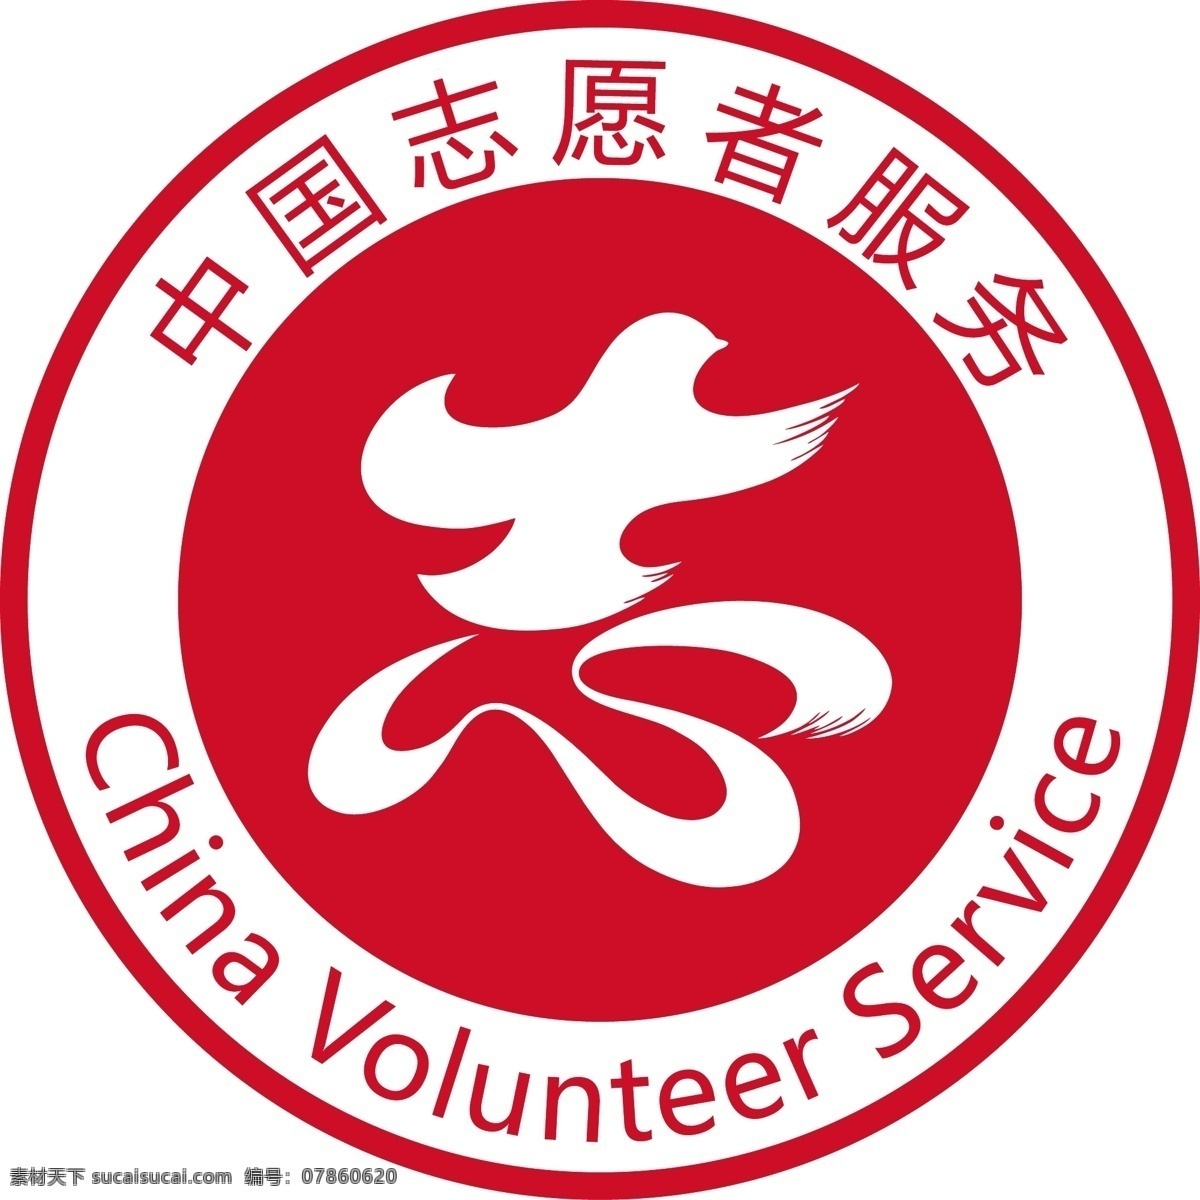 中国 志愿者 服务 标志 志愿者标 中国志愿者标 志愿服务标 logo标 志愿者标志 中国志愿者 标志图标 公共标识标志